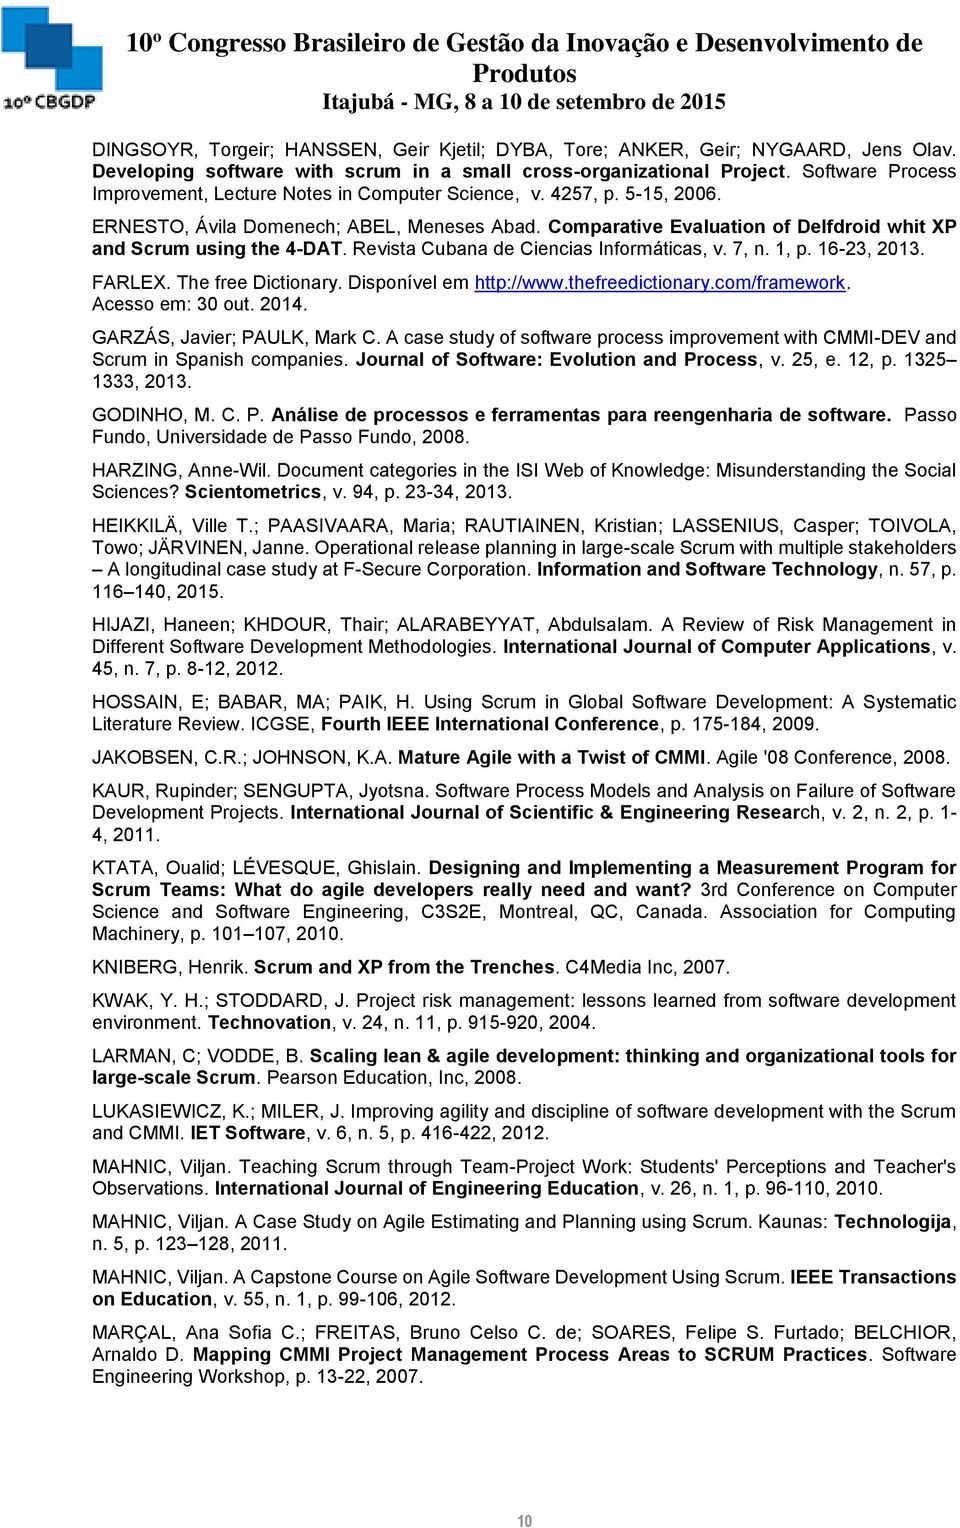 Comparative Evaluation of Delfdroid whit XP and Scrum using the 4-DAT. Revista Cubana de Ciencias Informáticas, v. 7, n. 1, p. 16-23, 2013. FARLEX. The free Dictionary. Disponível em http://www.